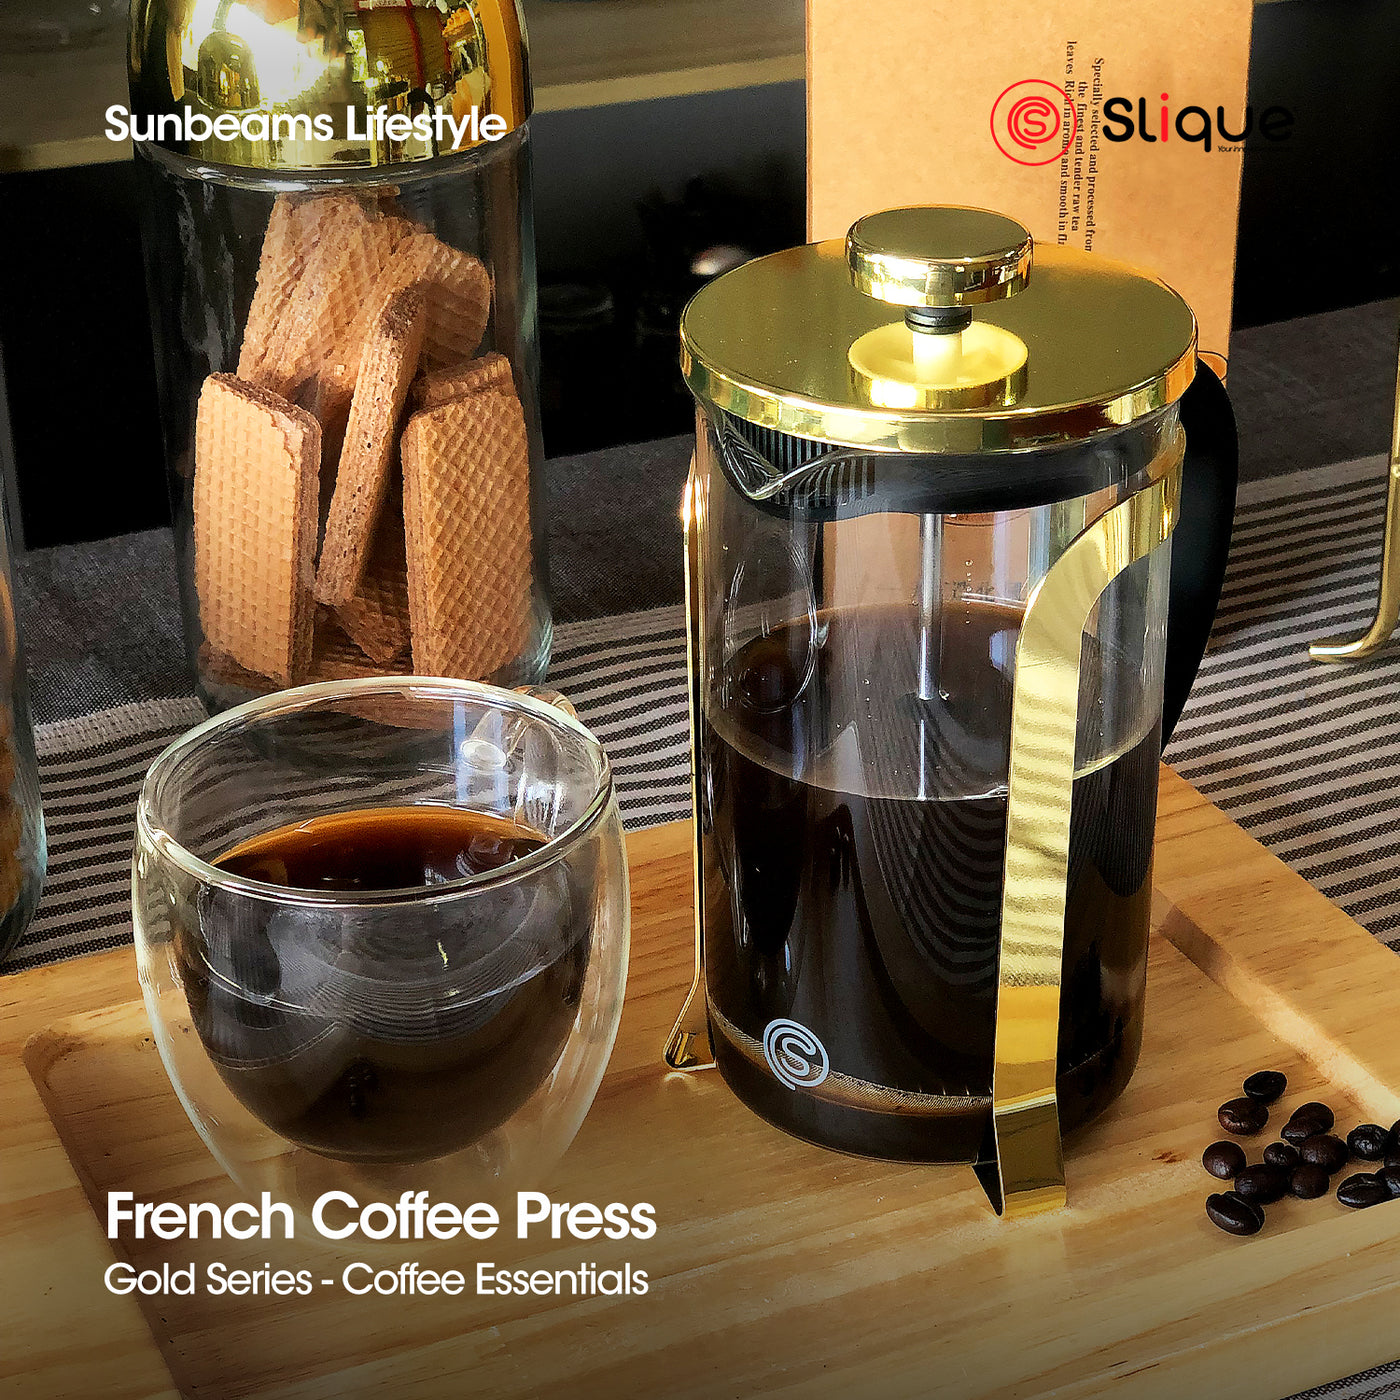 SLIQUE Premium Borosilicate Glass Copper French Coffee Press 600ml|0.6L Coffee Lovers Modern Italian Design Amazing Gift Idea For Any Occasion! (Gold)